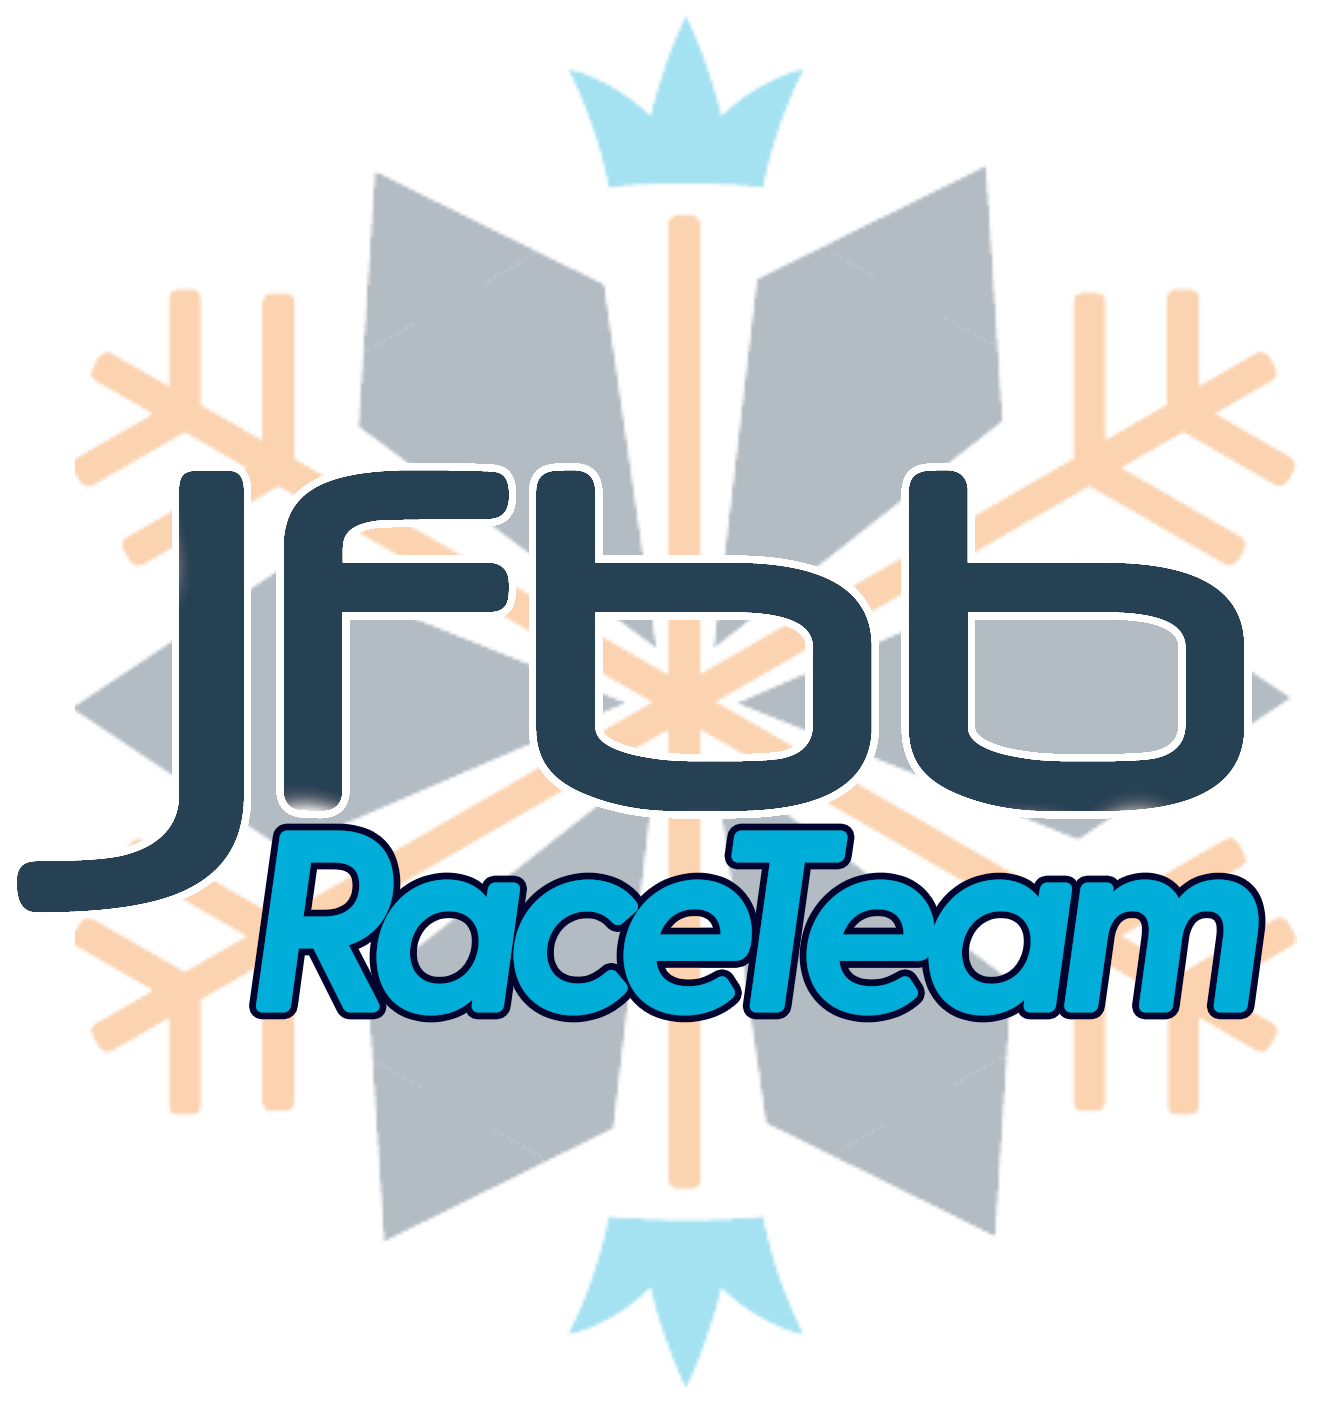 Jack Frost / Big Boulder Race Team